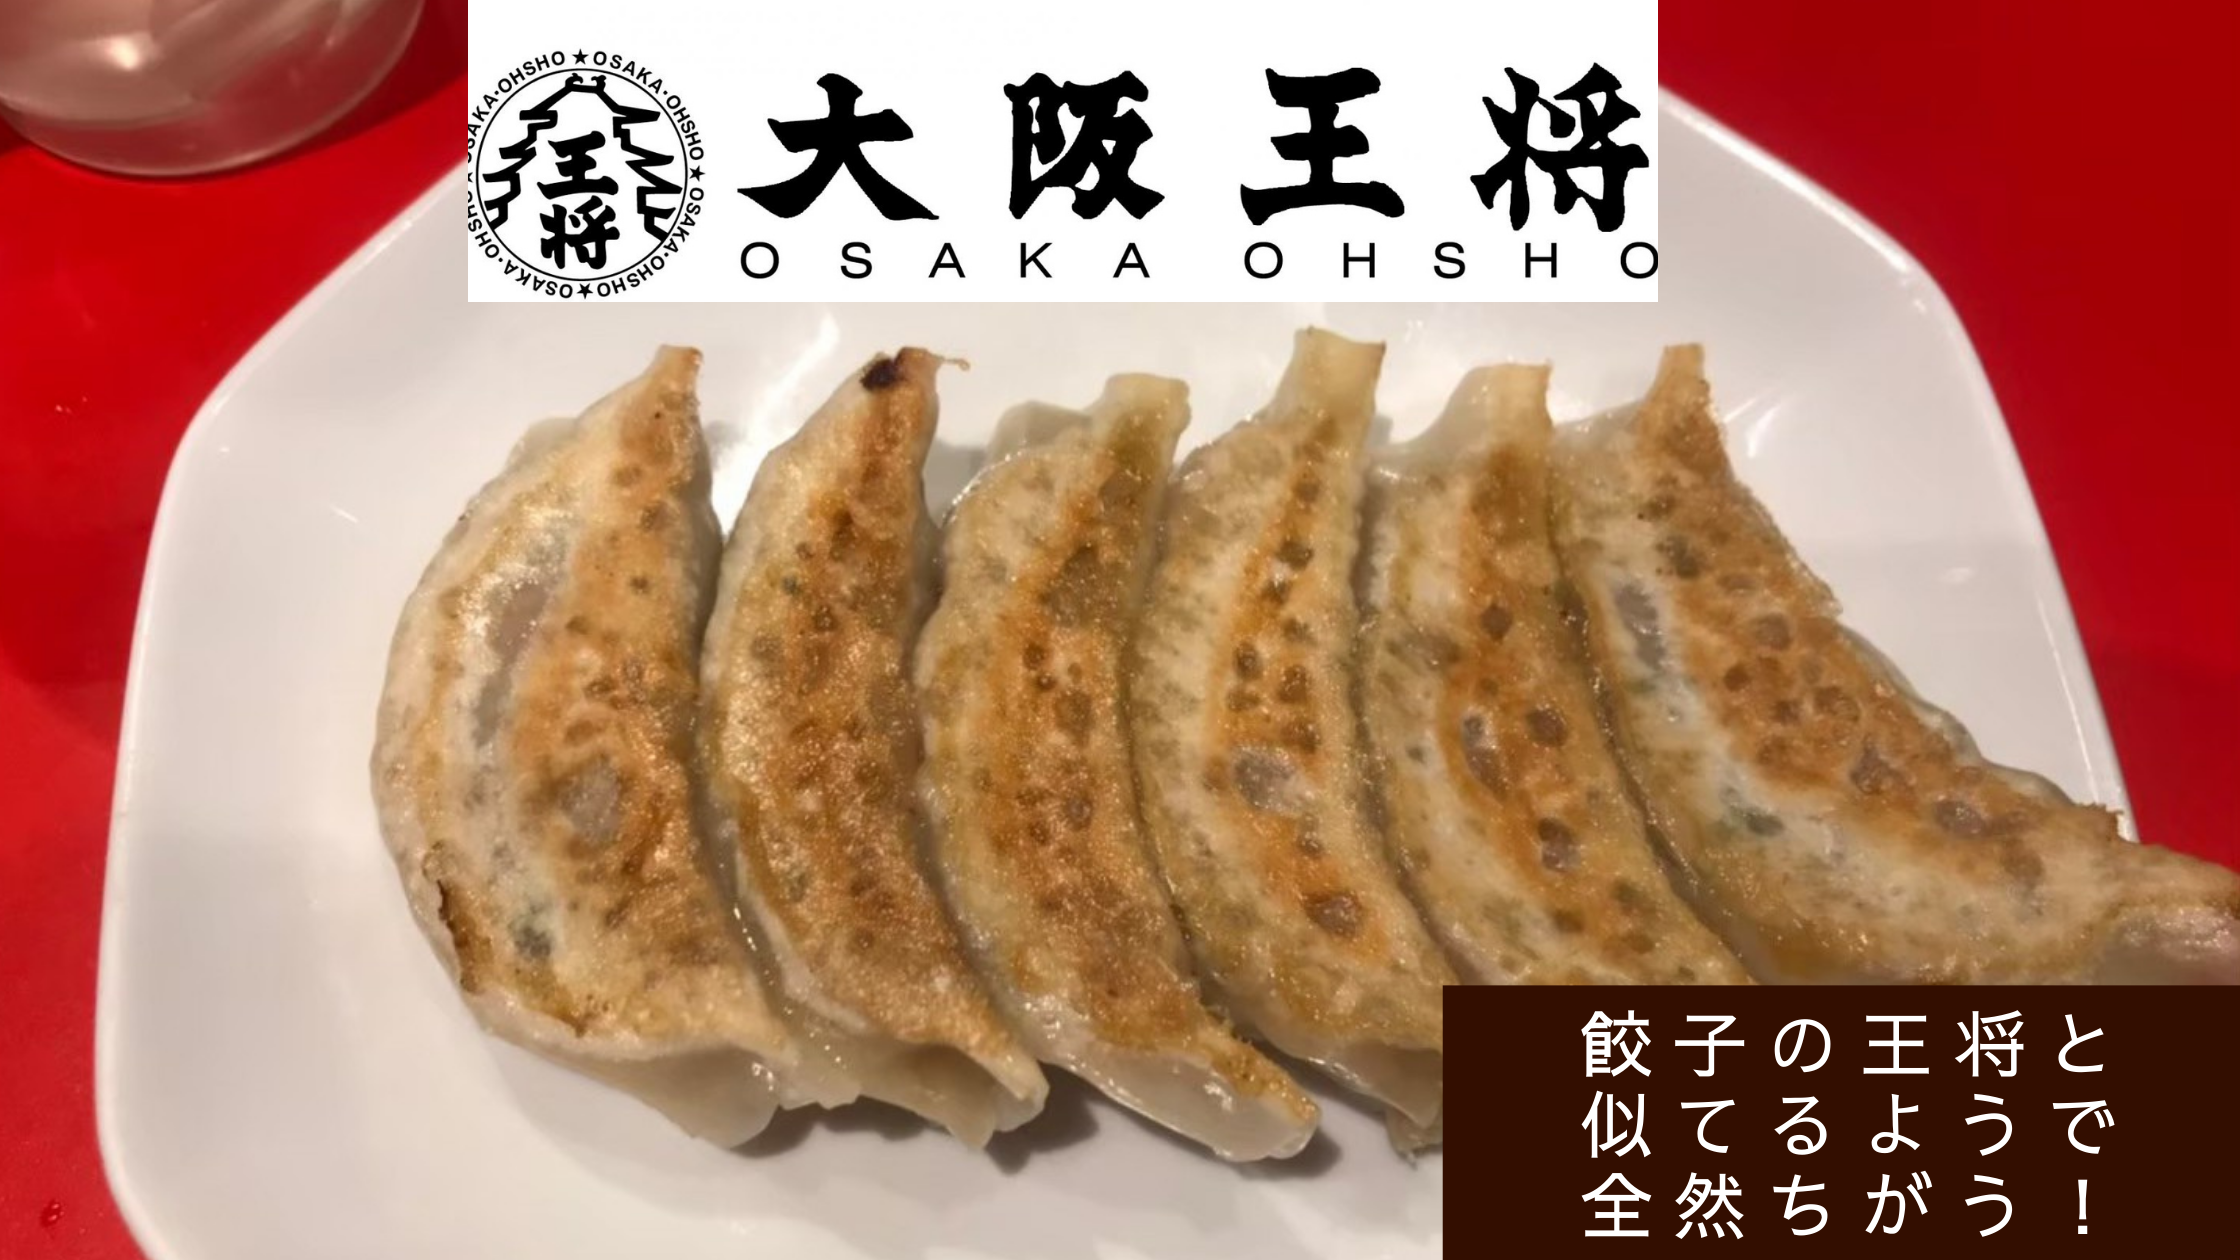 餃子の王将とまったく違う「大阪王将」の餃子は、昼でもニオイを気にせず食べられます。